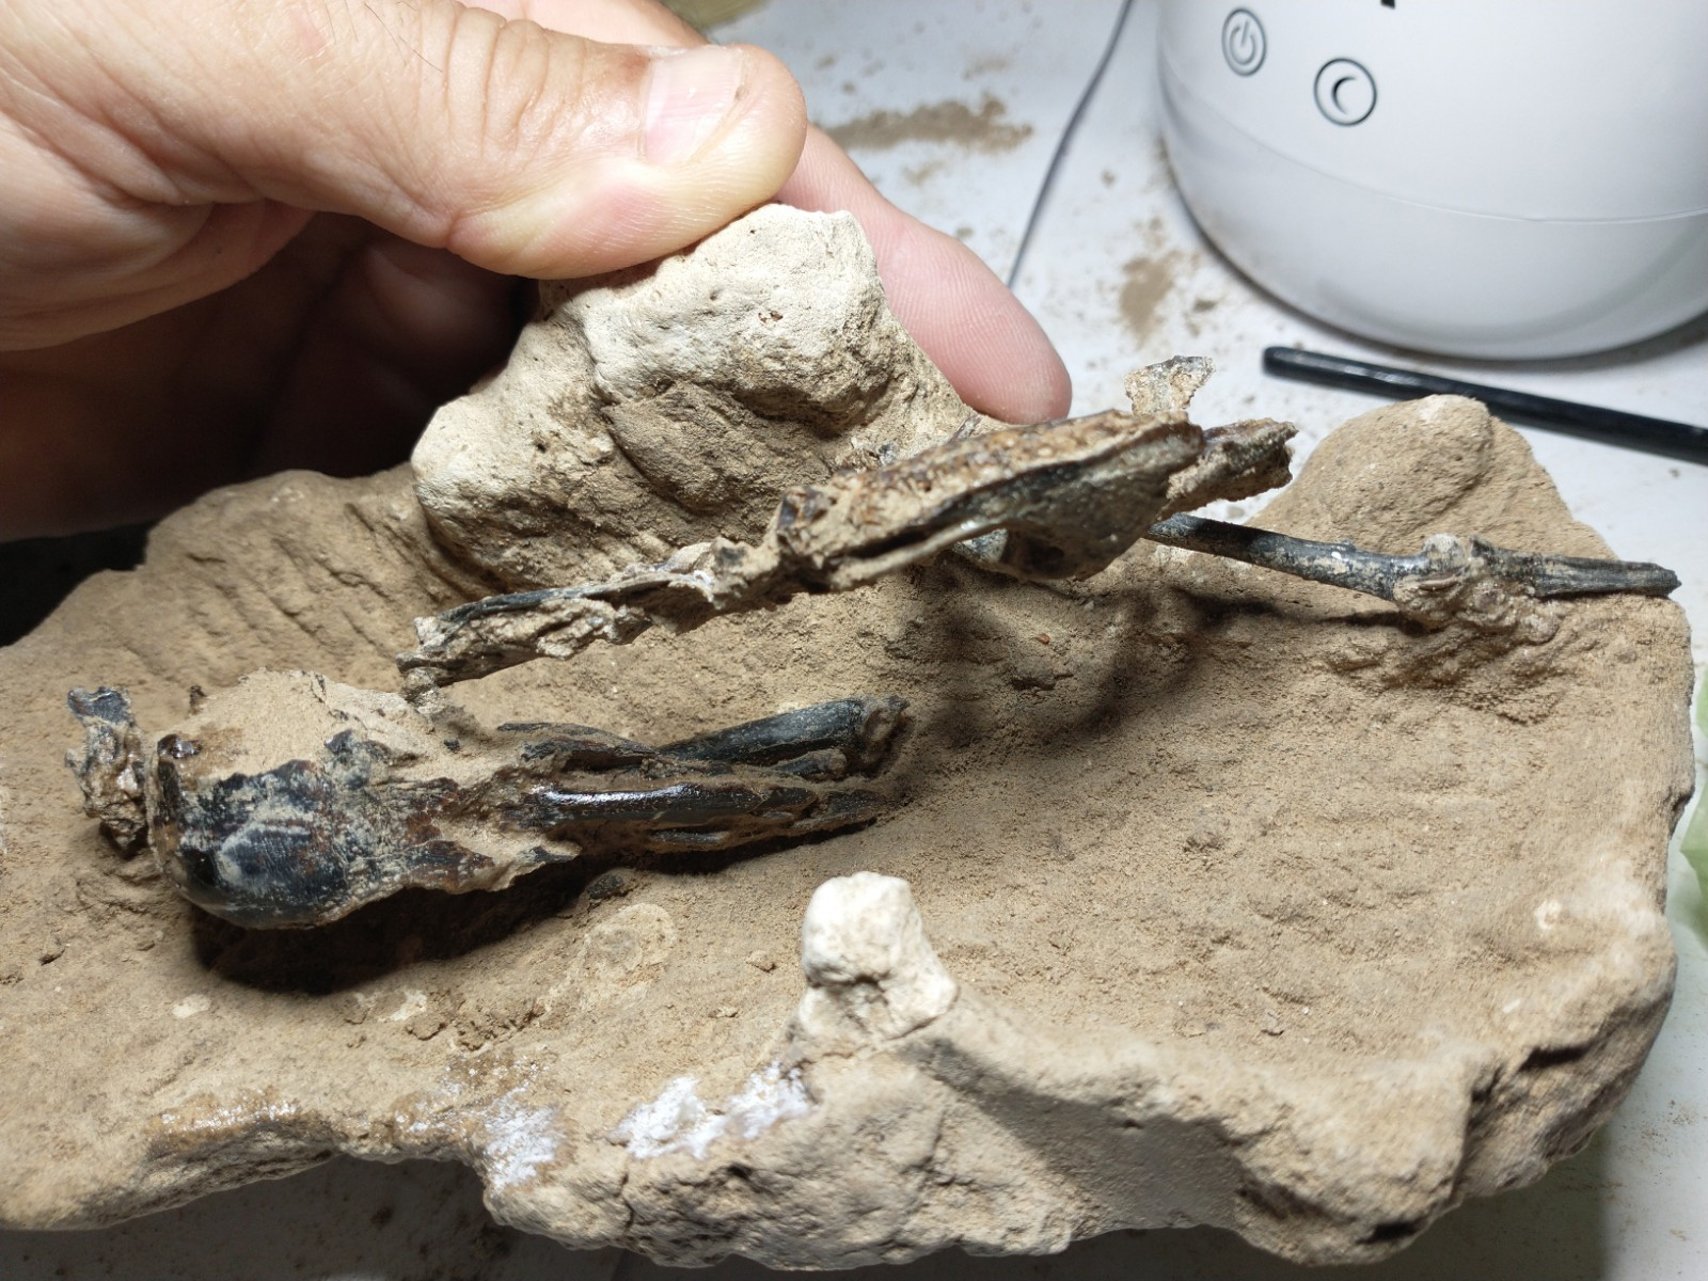 Hallan en Argentina fósil de un pájaro carpintero de hace 200,000 años